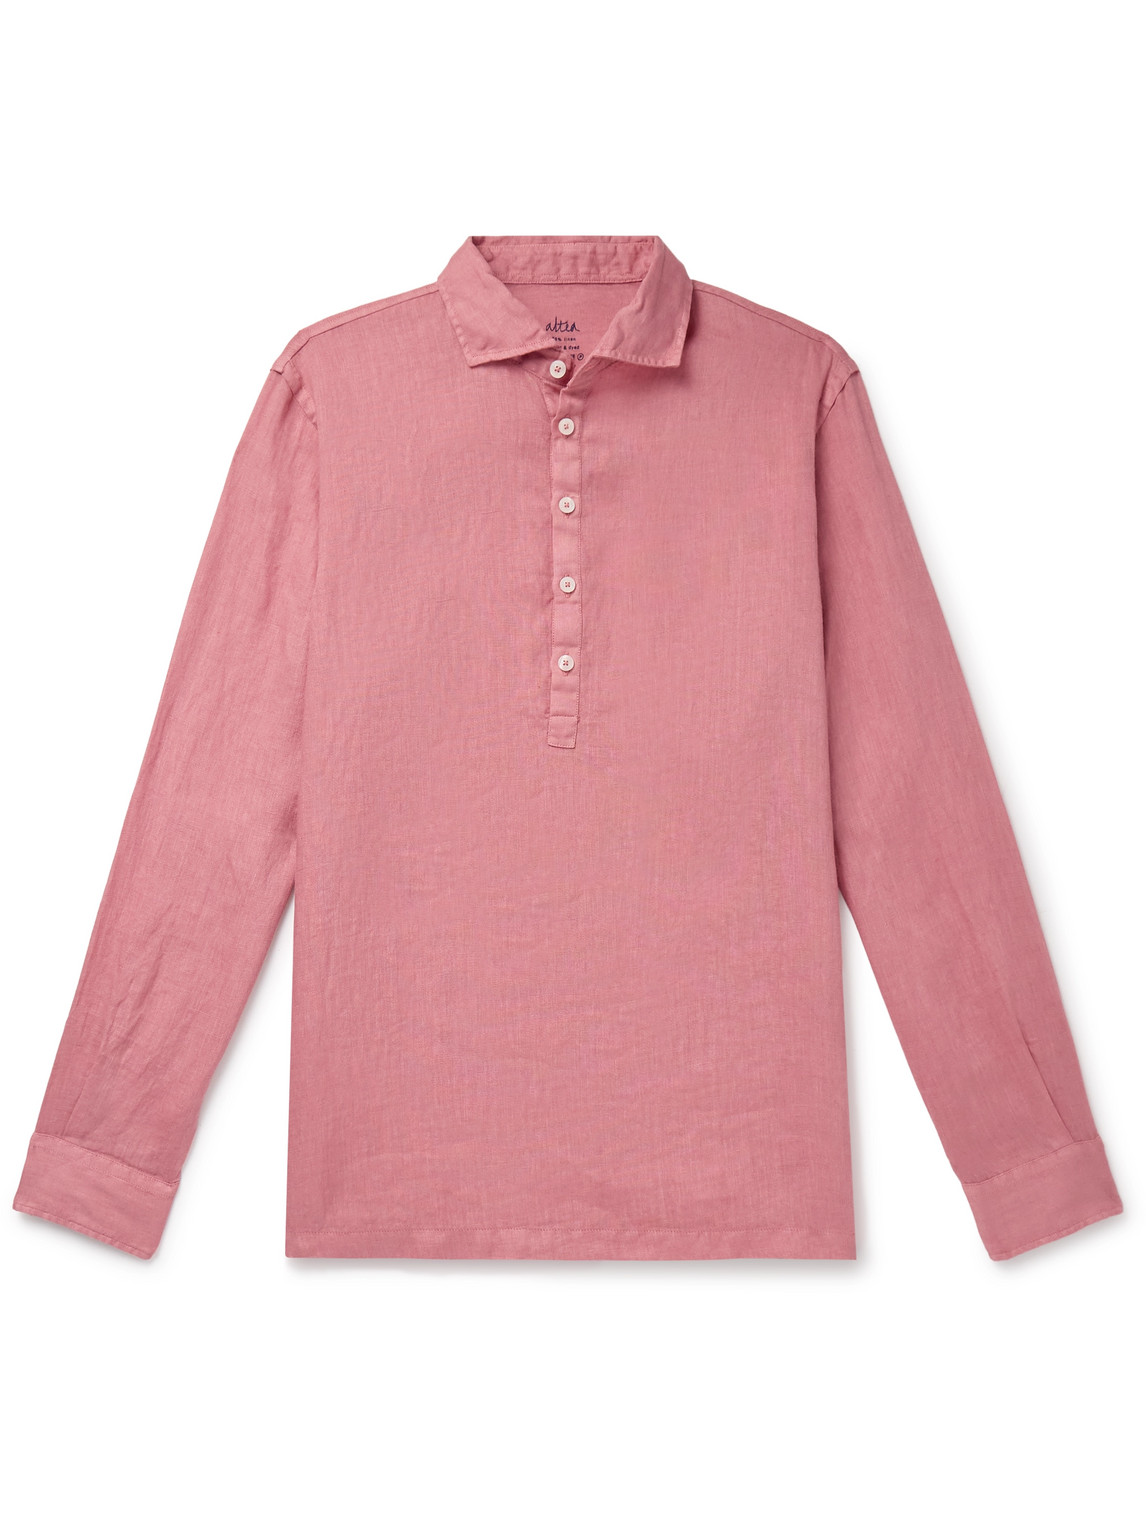 Altea Tyler Garment-dyed Linen Half-placket Shirt In Pink